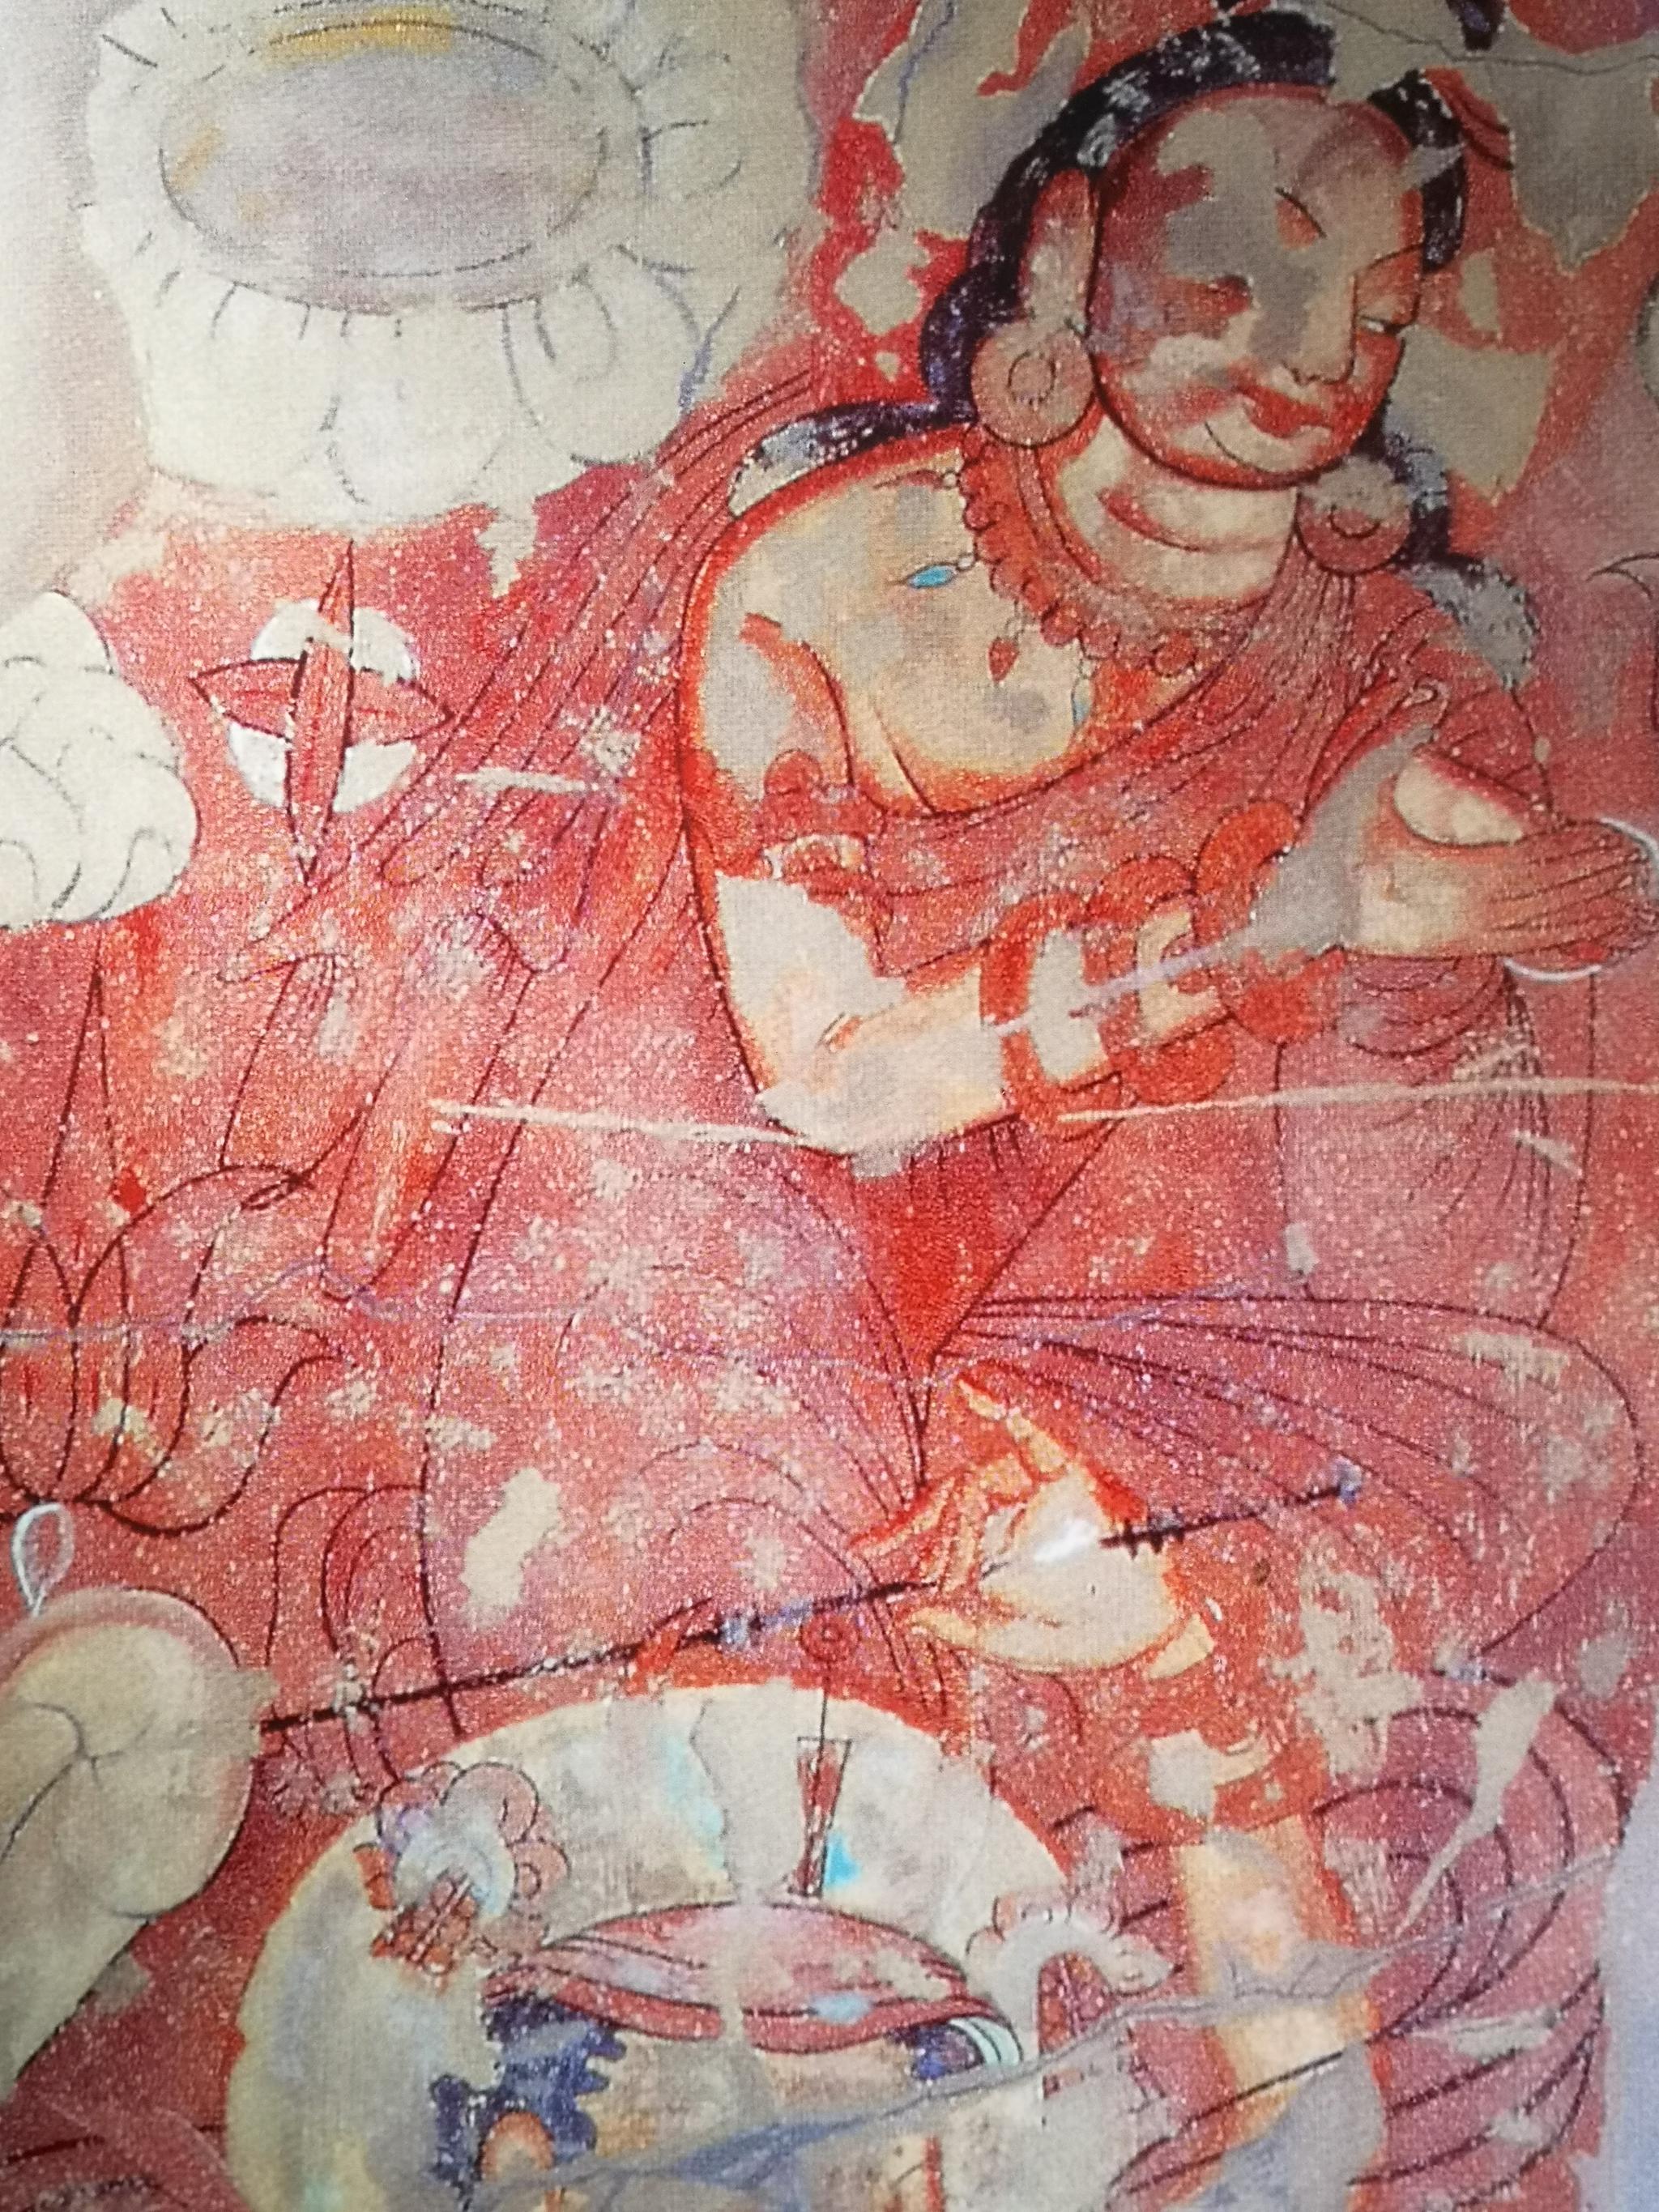 天梯山石窟 壁画图片